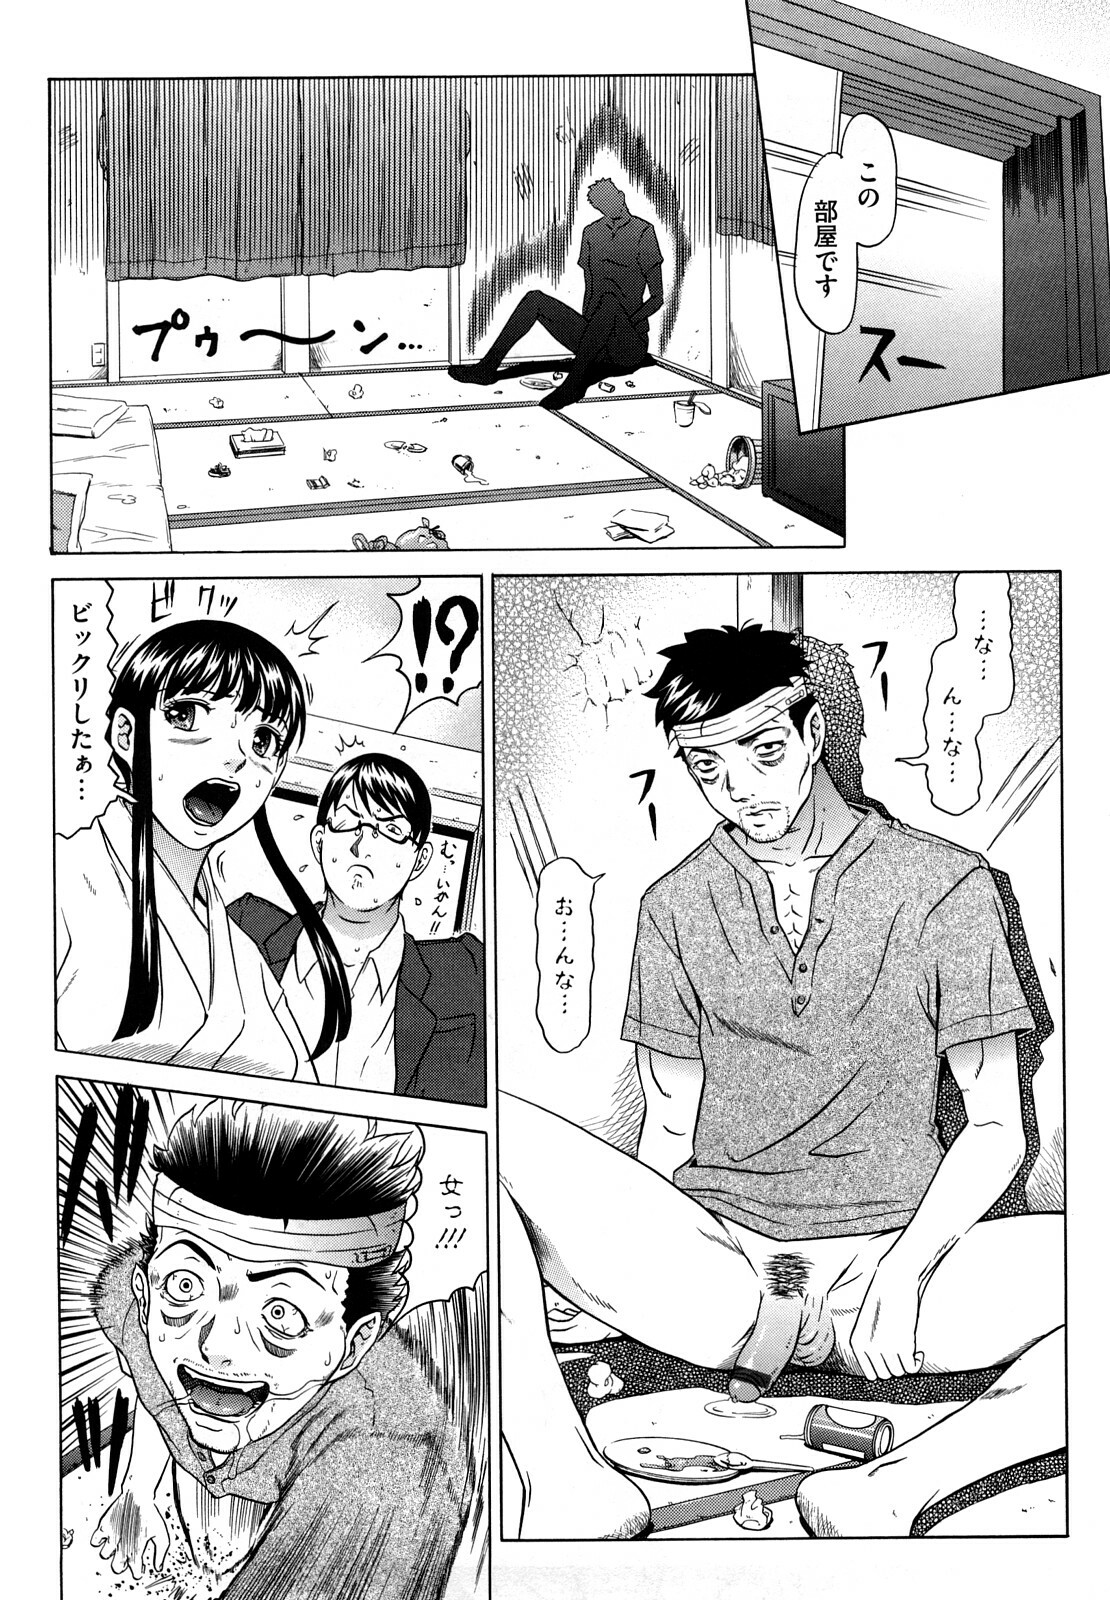 [Kurono Masakado] Nocturnal page 9 full